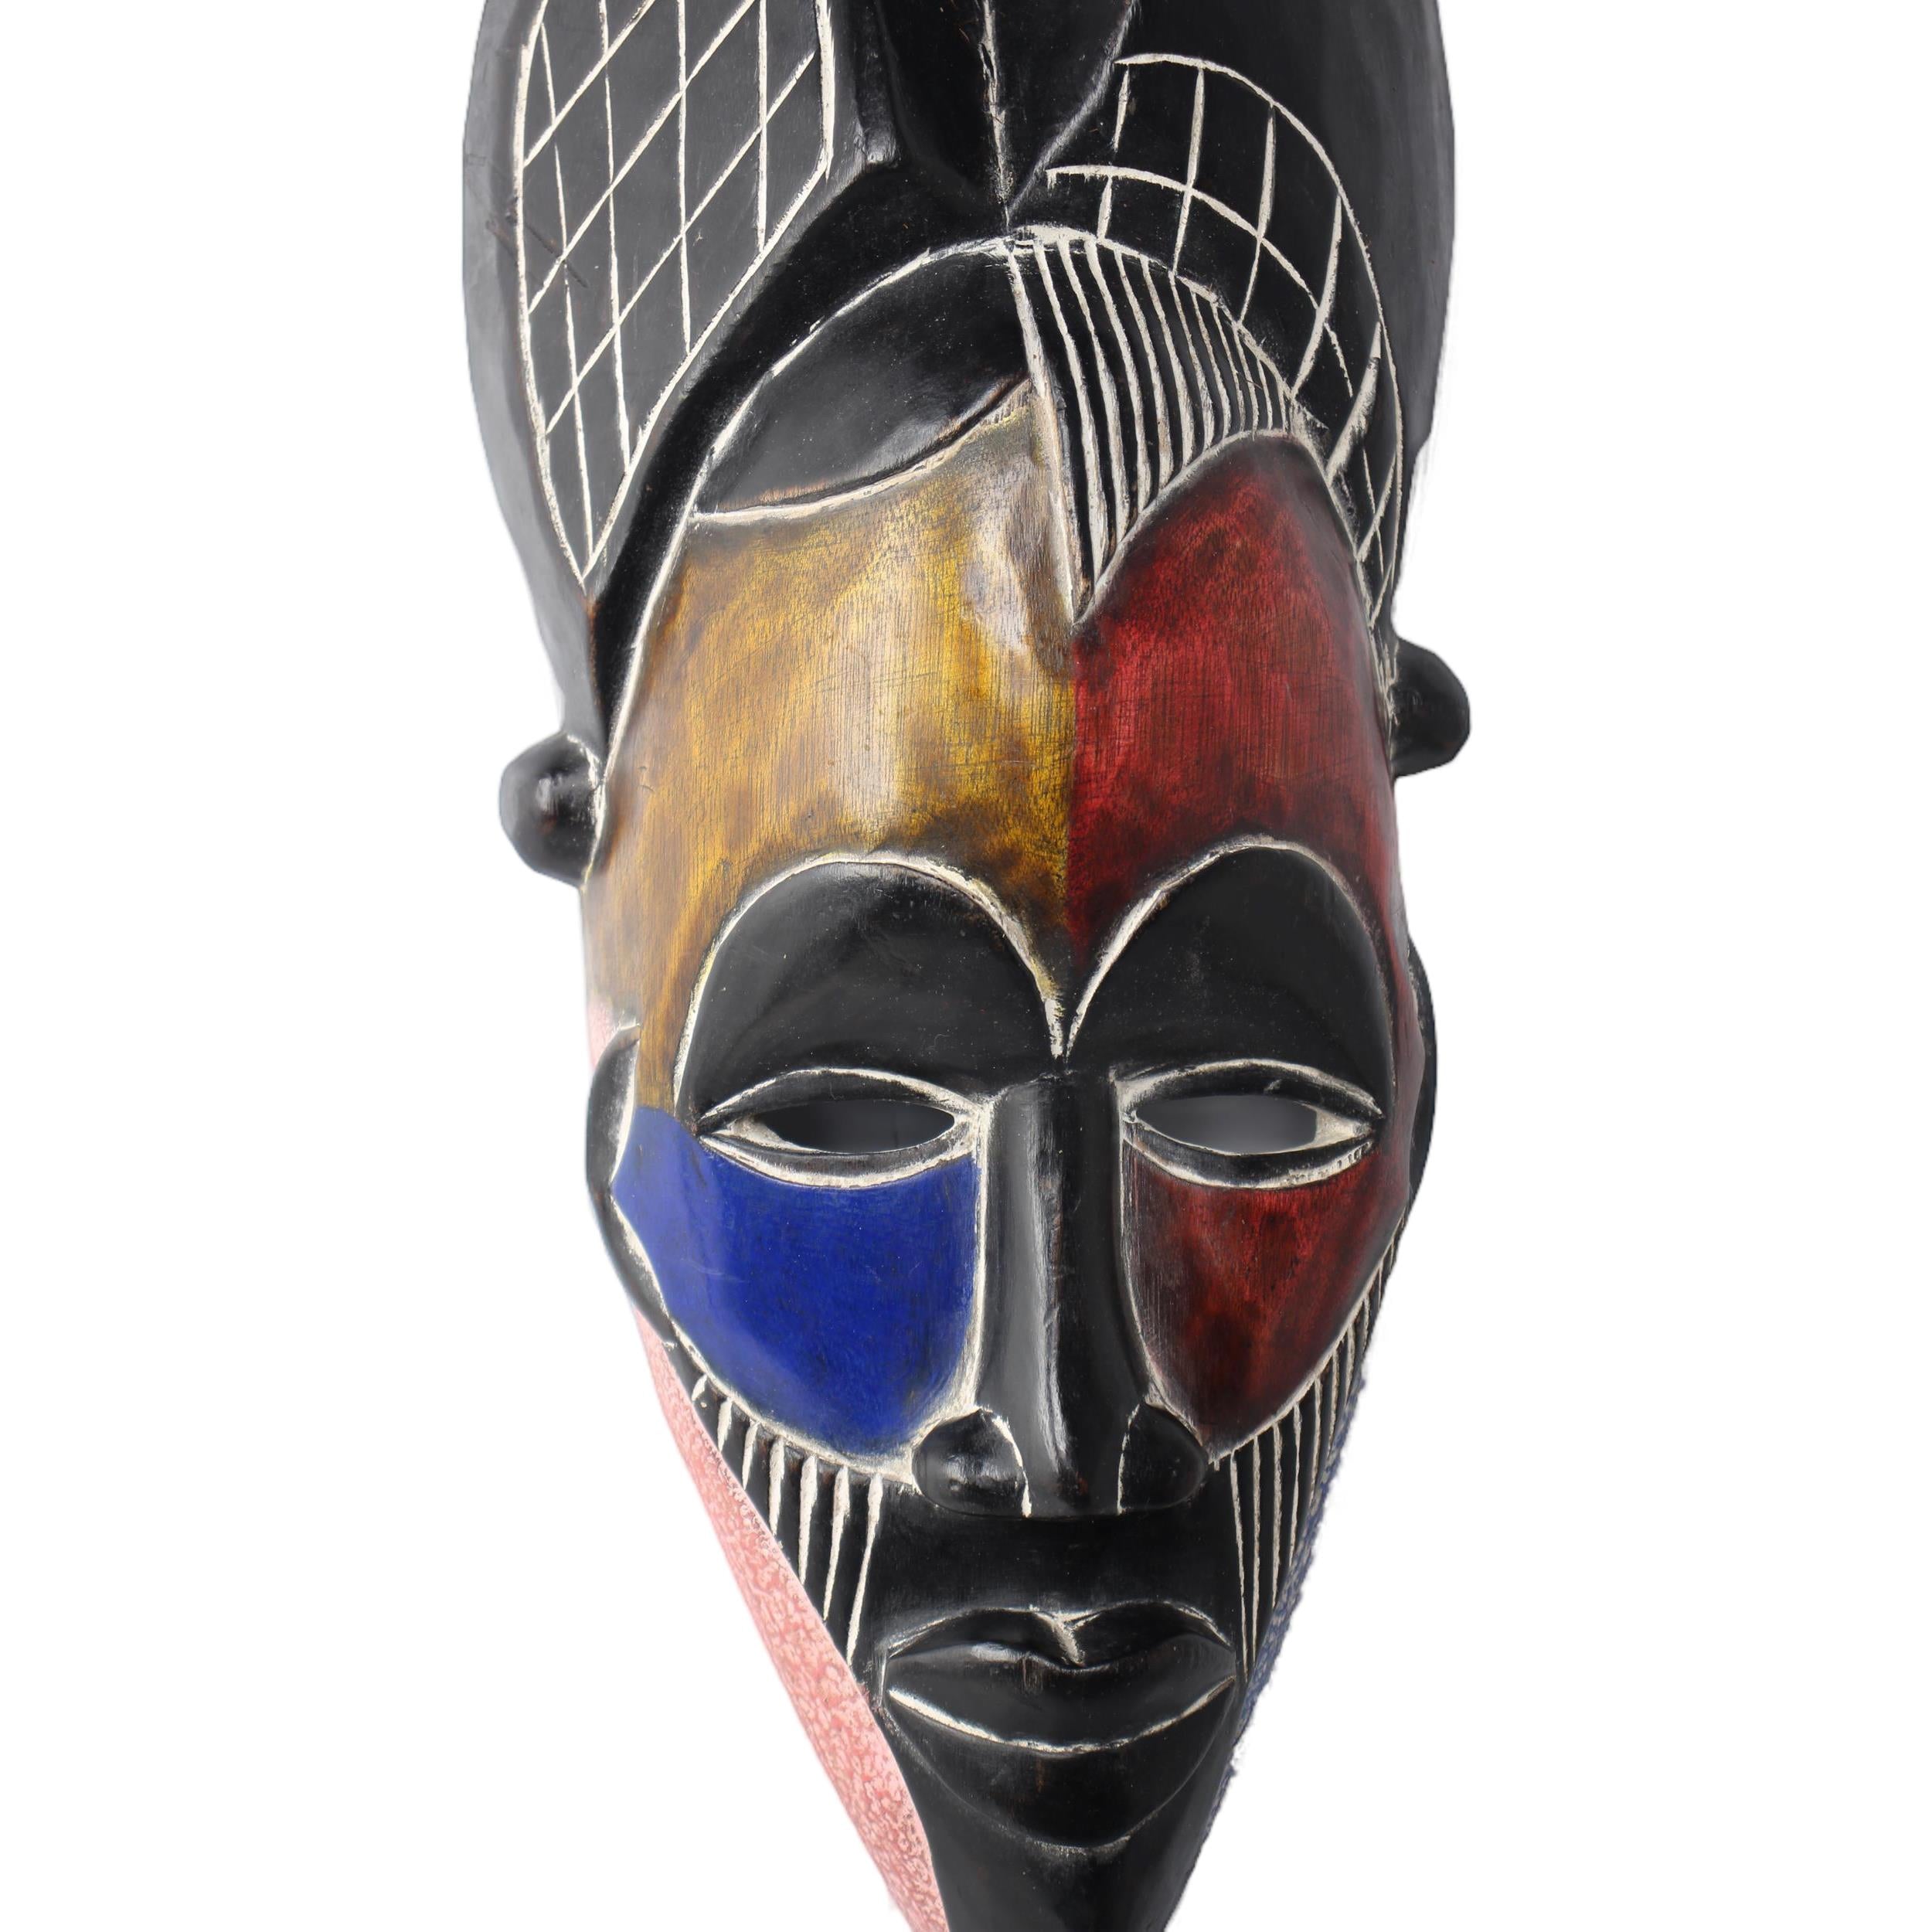 Tikar Tribe Mask ~18.9" Tall - Mask